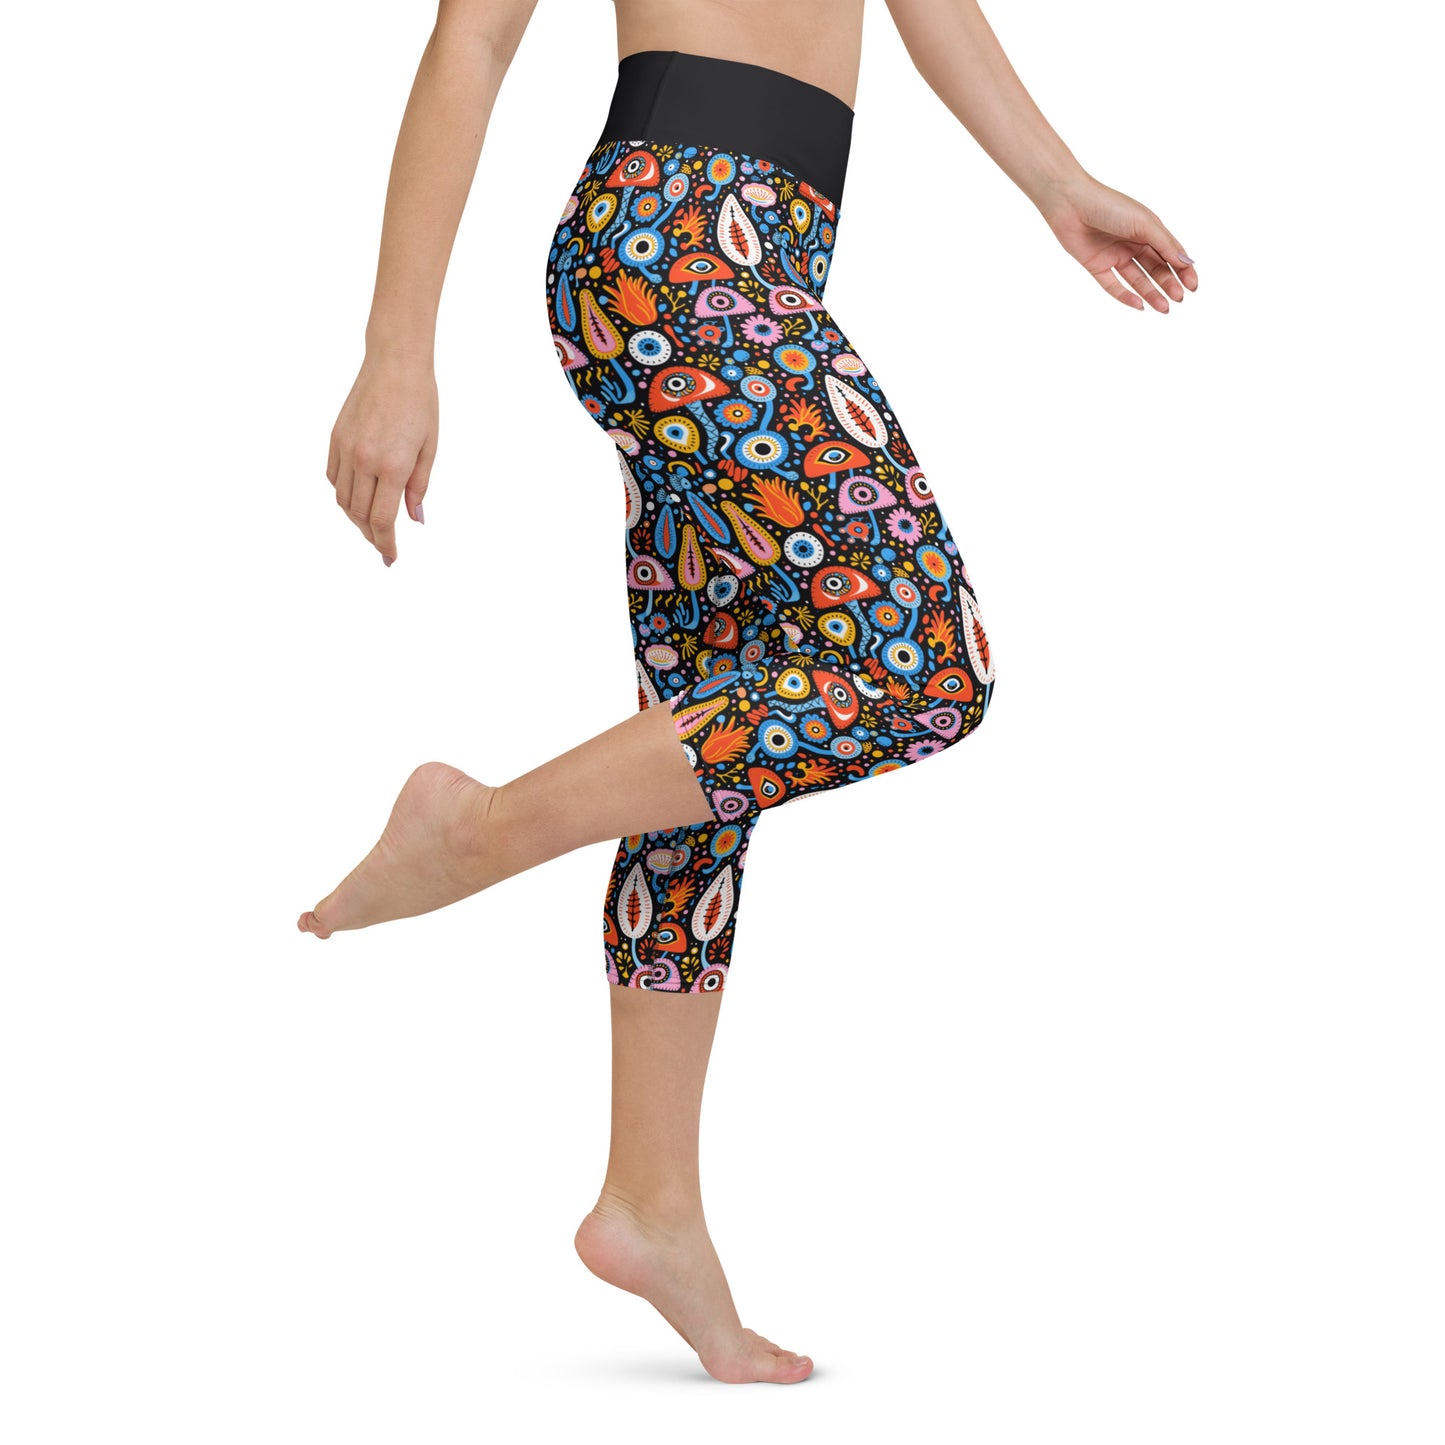 Sammlerin Capri High Waist Yoga Leggings / Pants with Inside Pocket